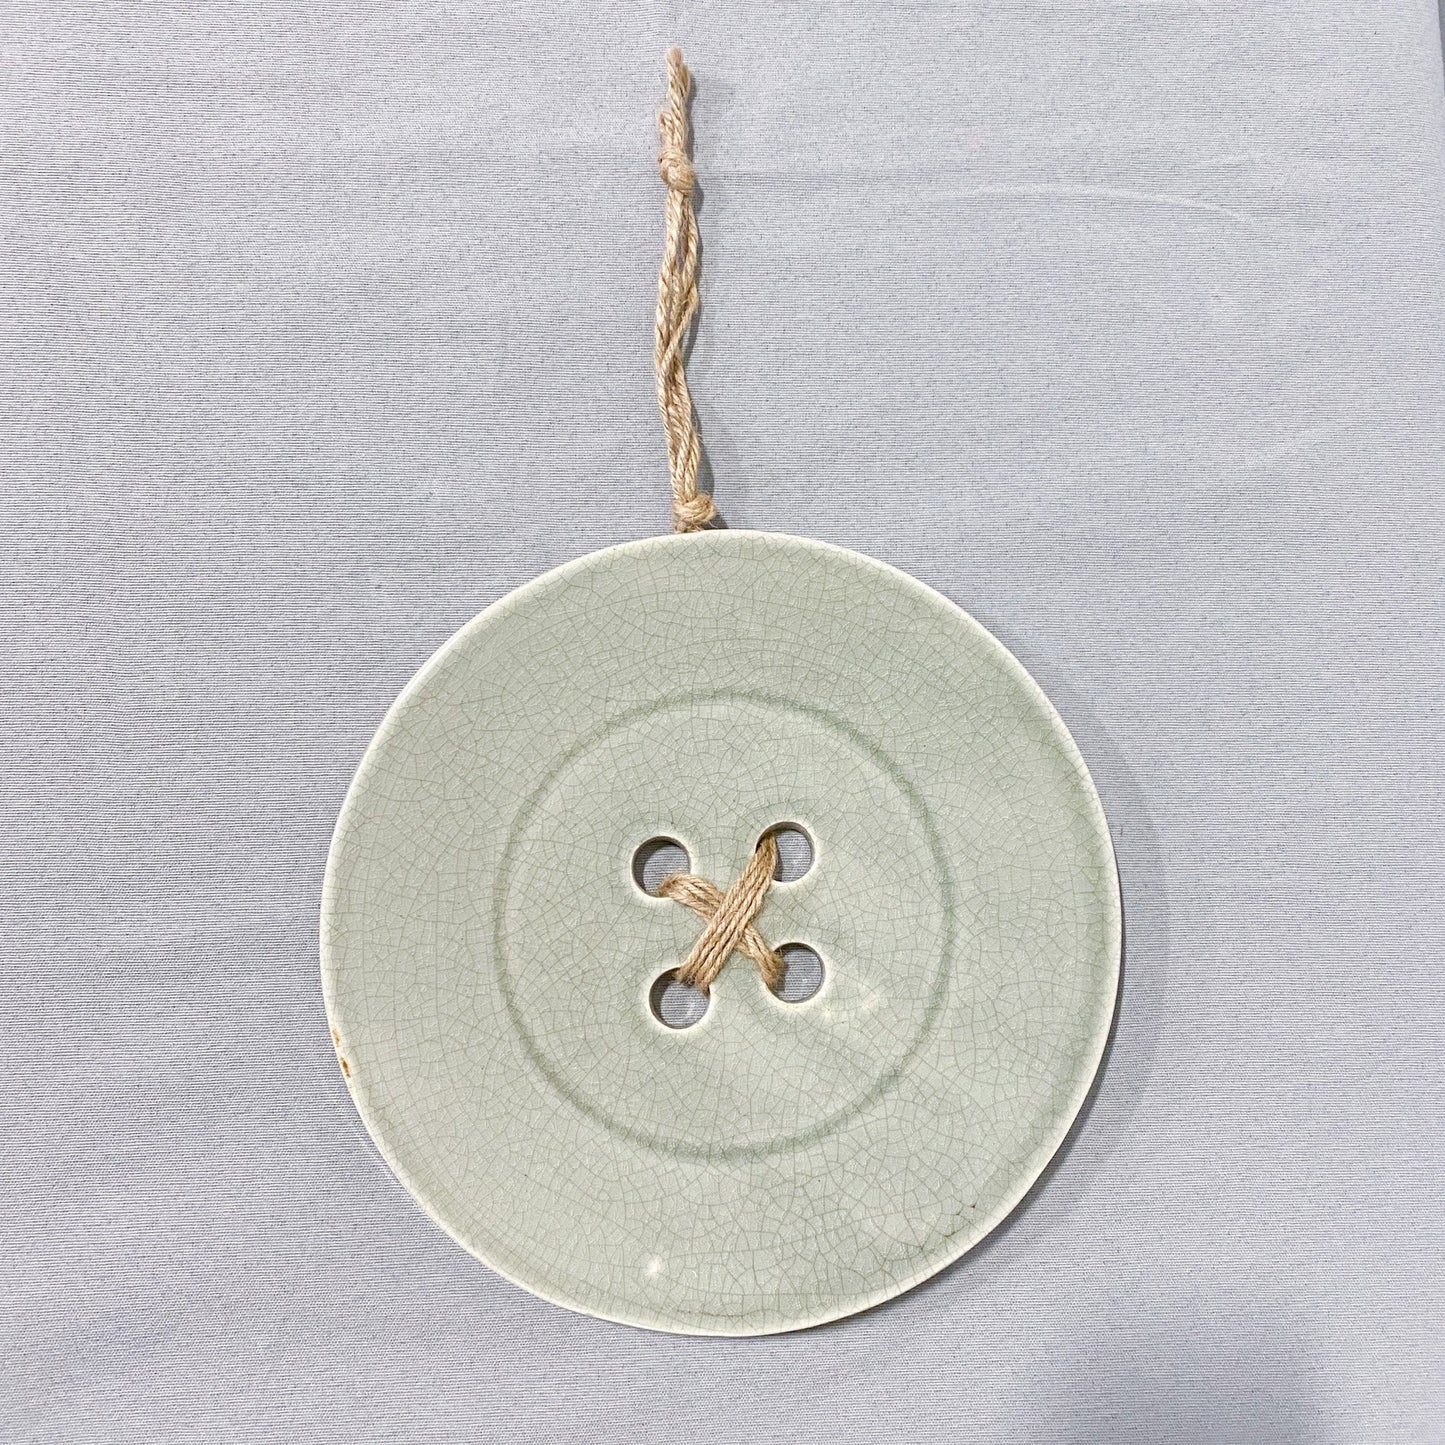 Ceramic Button Wall Decor